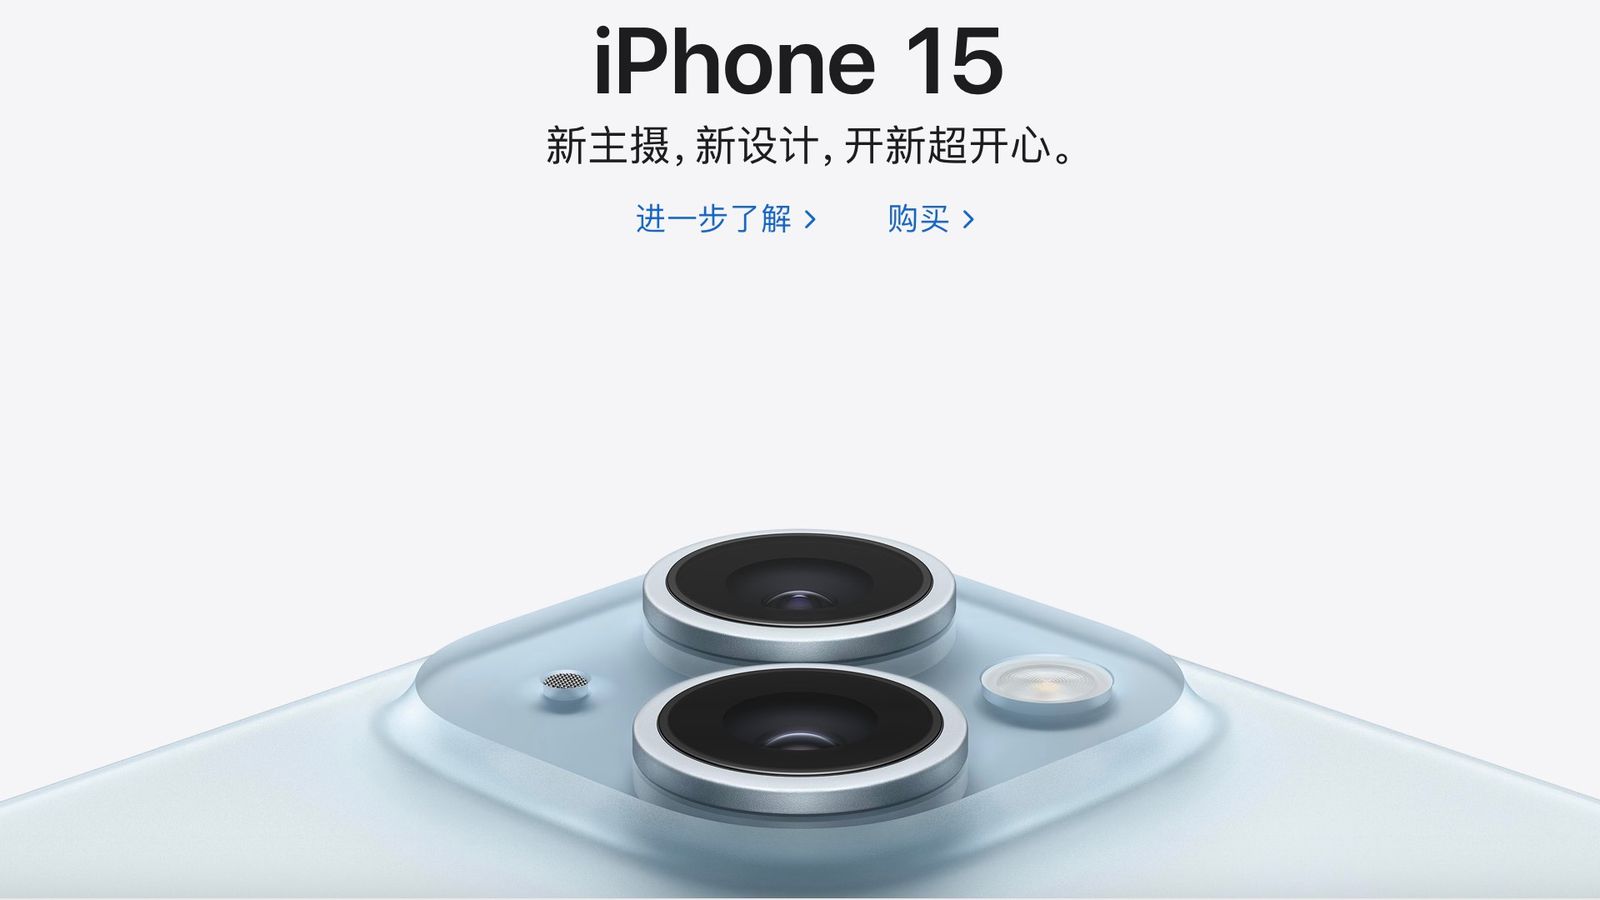 من iPhoneIslam.com، لقطة مقربة لعدسات كاميرا iPhone 15 على خلفية زرقاء مع نص صيني يروج للتقدم التكنولوجي في أبريل 2023.